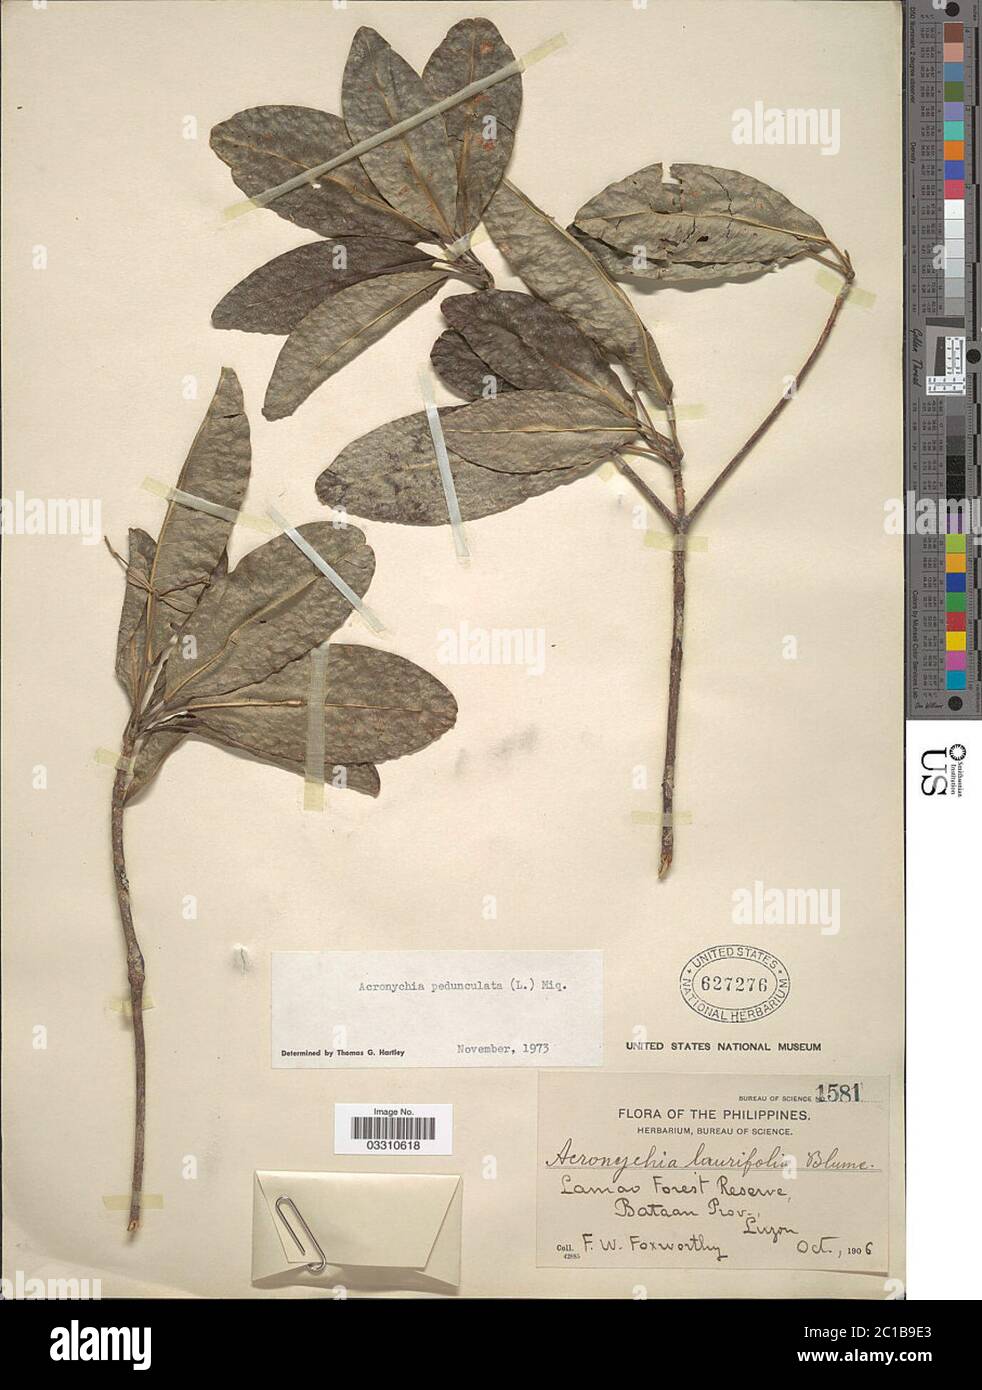 Acronychia pedunculata L Miq Acronychia pedunculata L Miq. Stock Photo